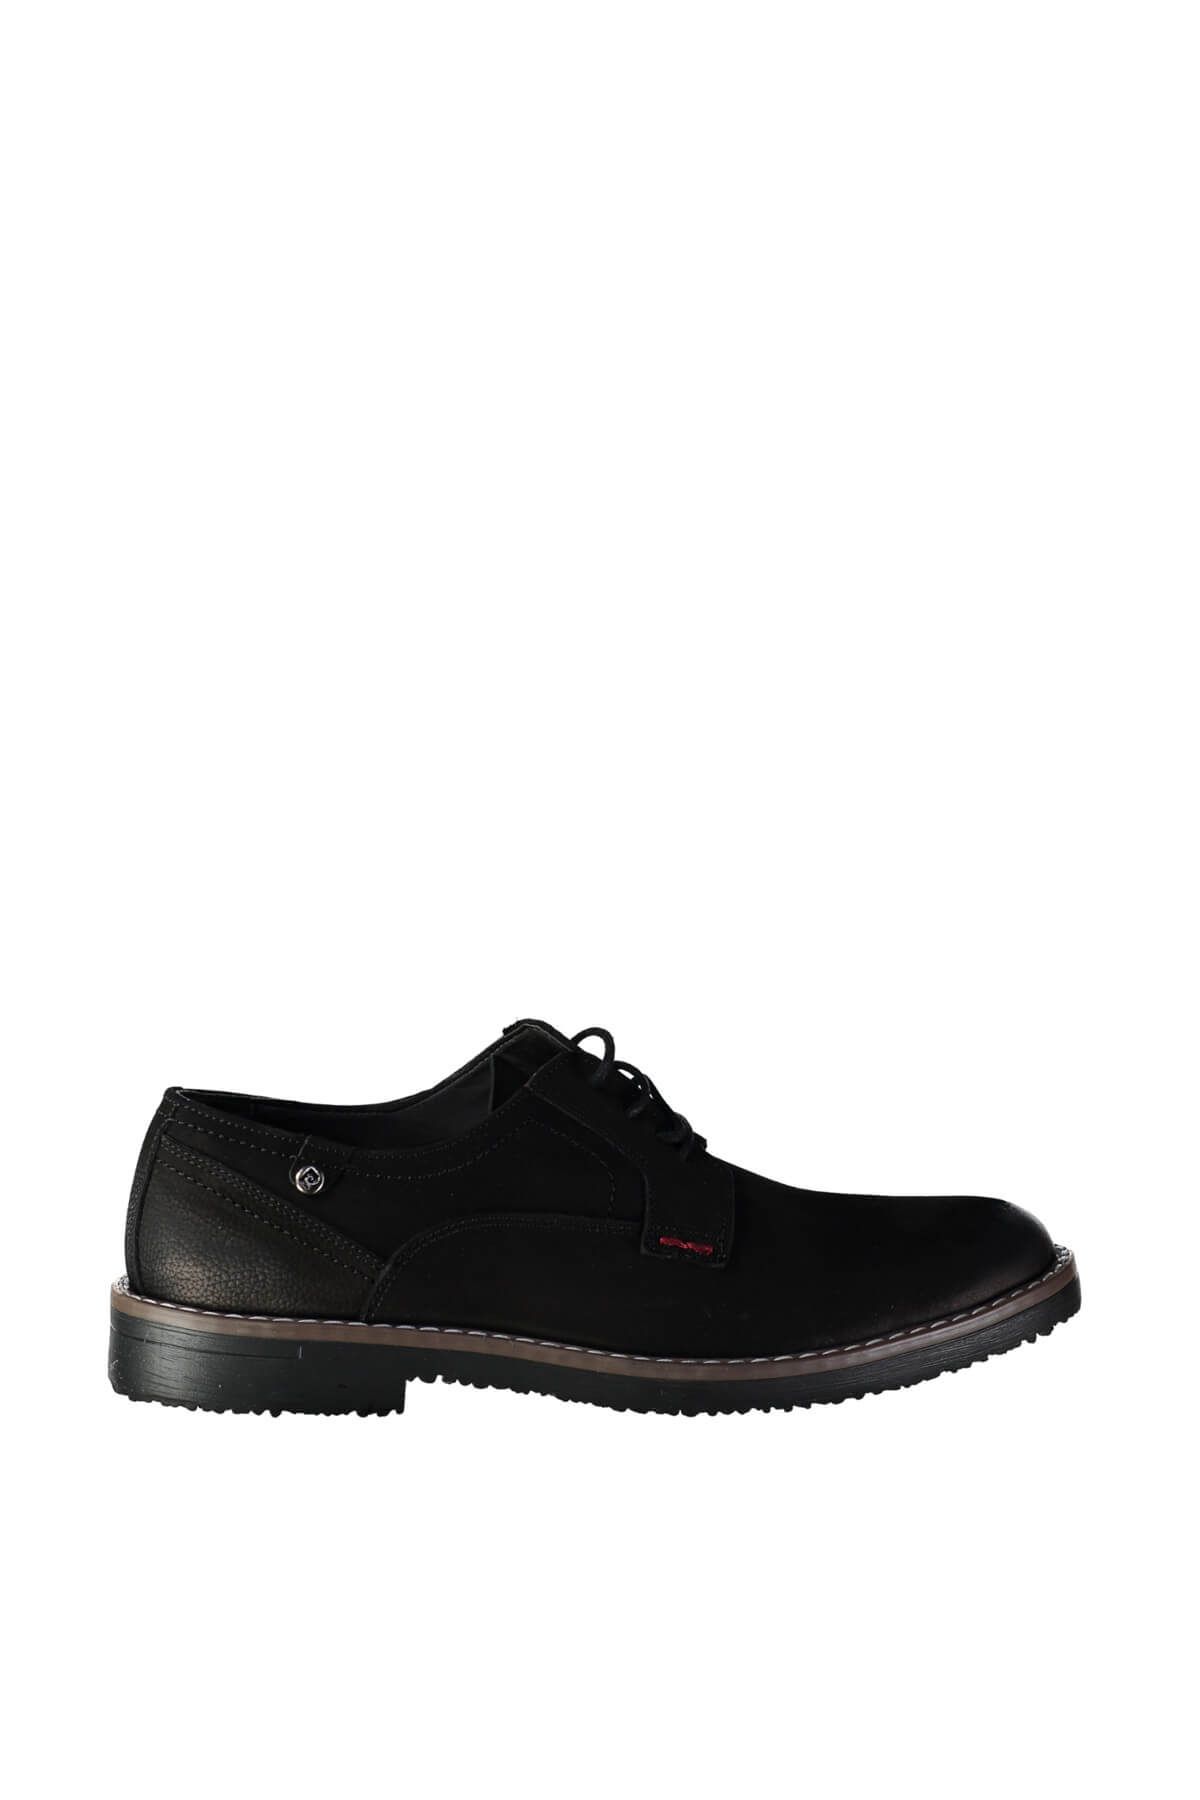 Pierre Cardin Hakiki Deri Siyah Nubuk Erkek Casual Ayakkabı P35410